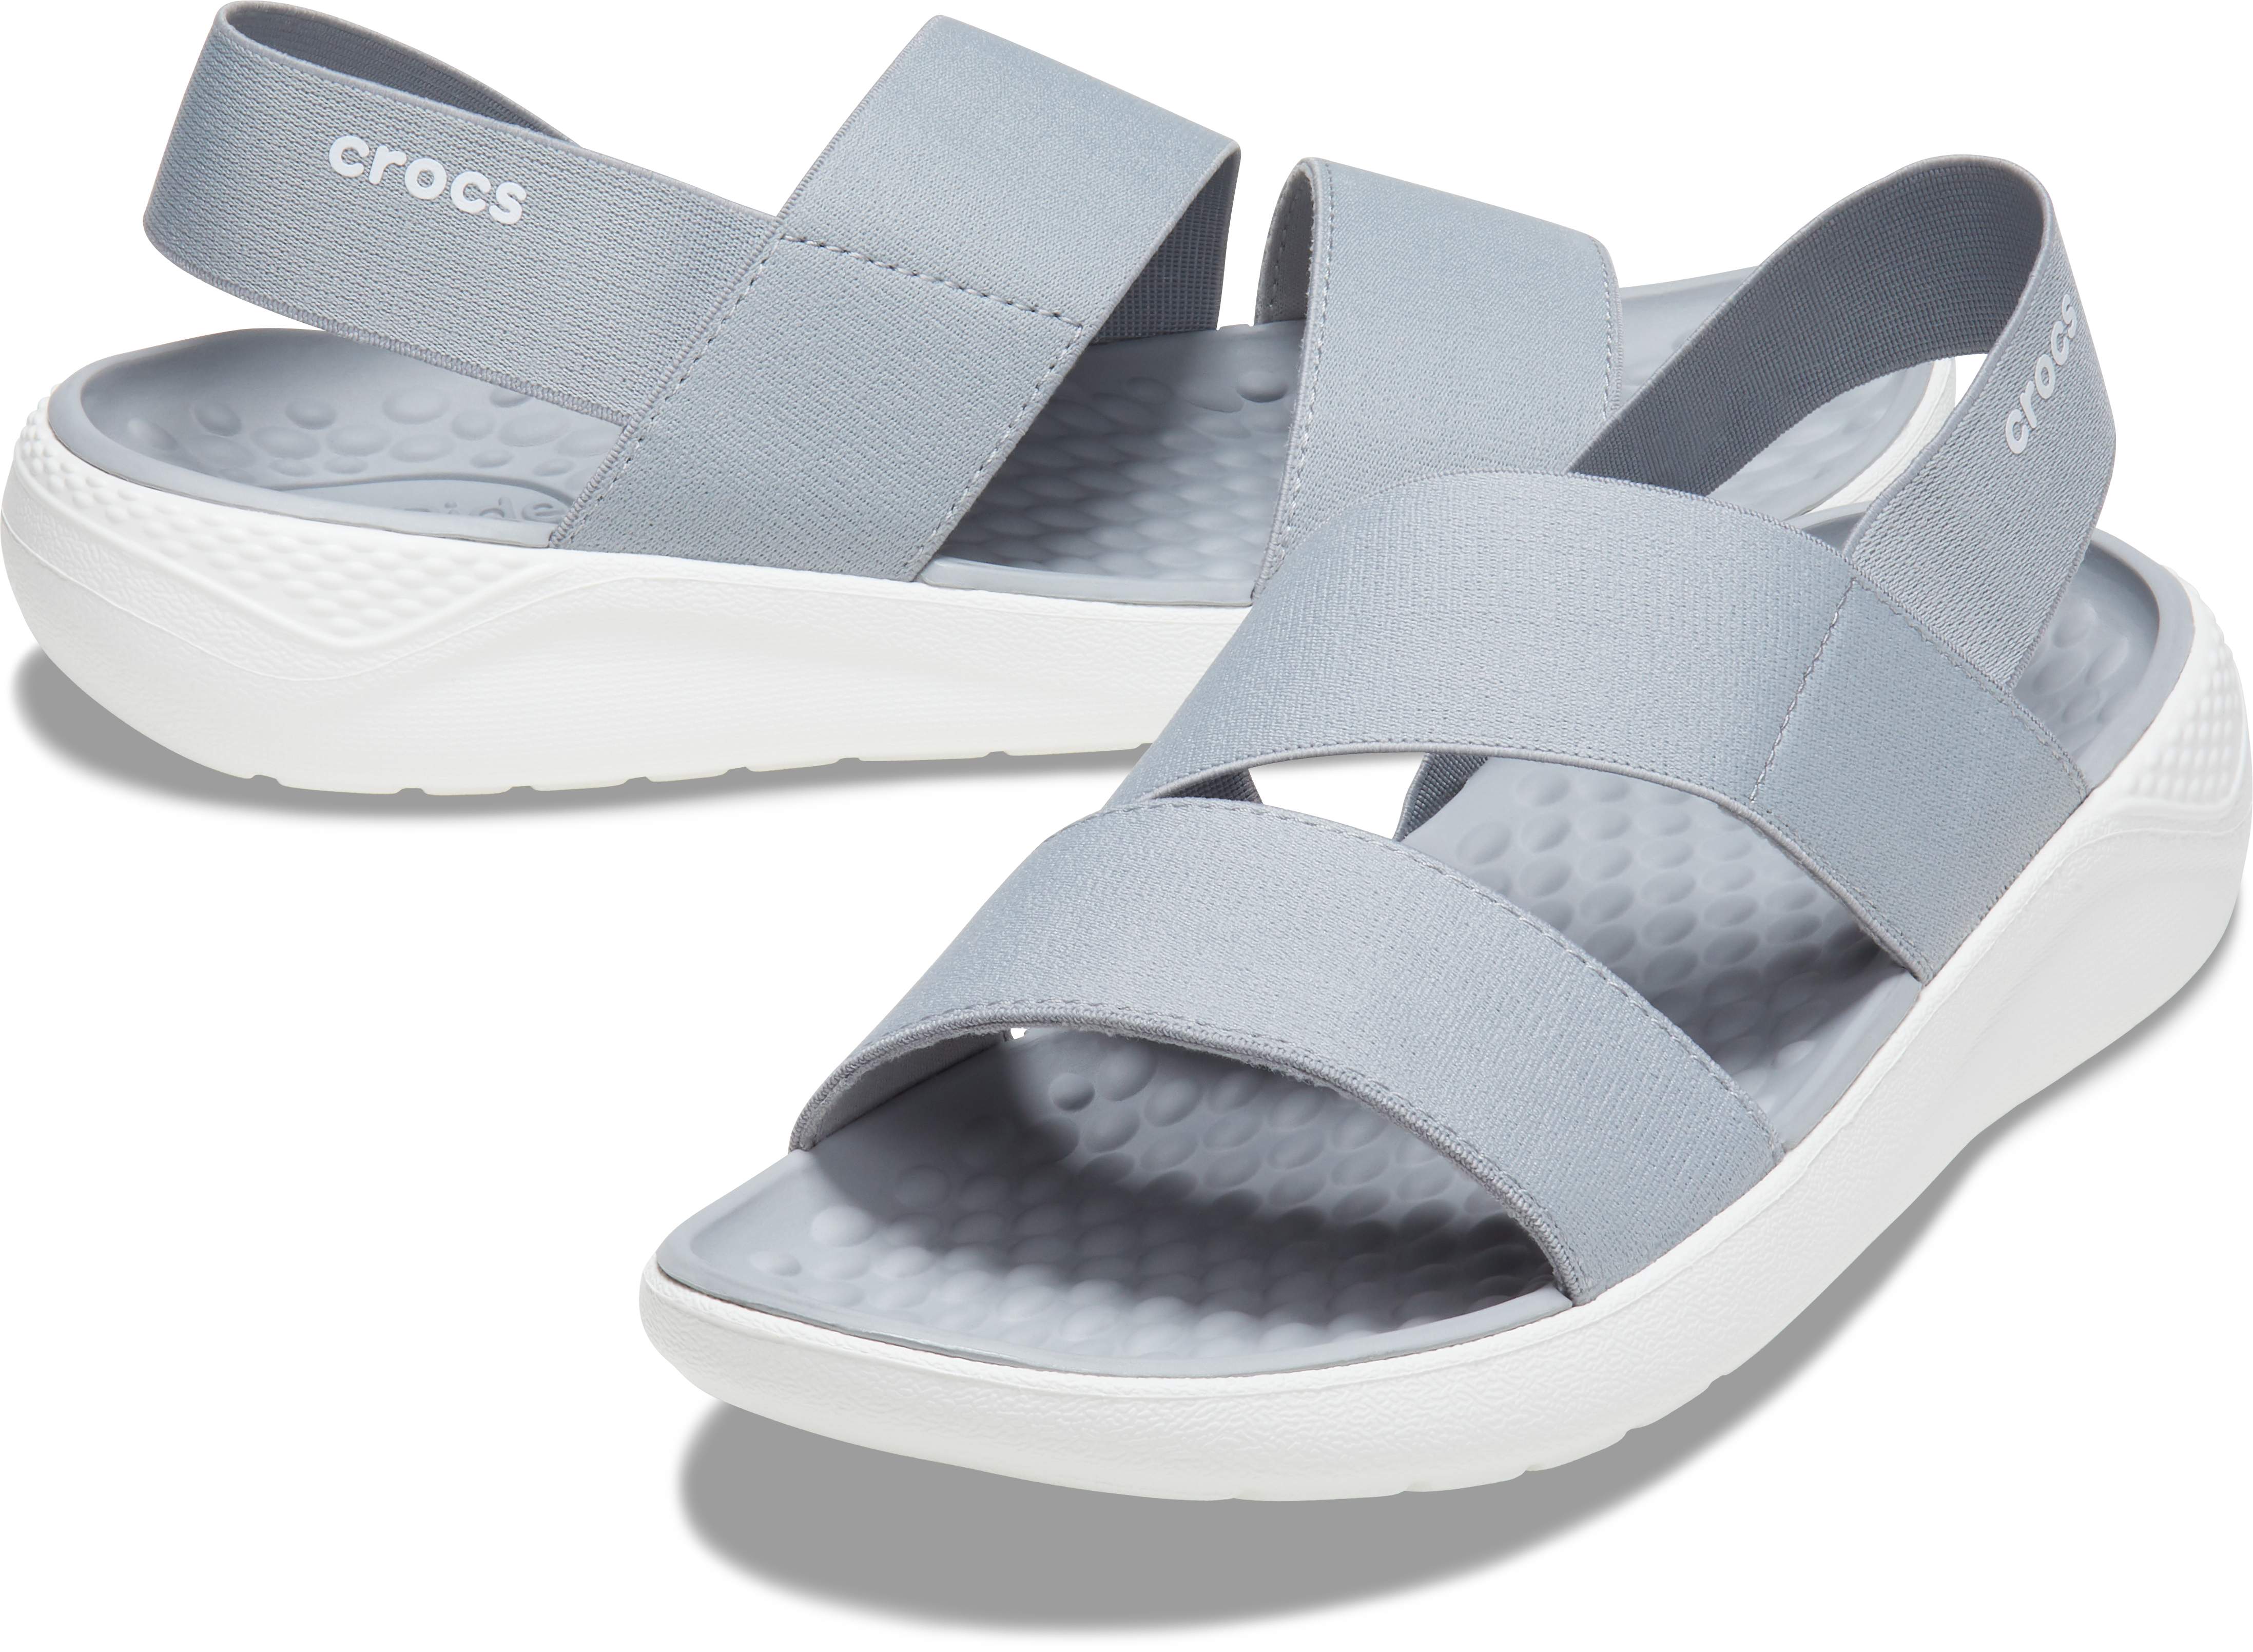 crocs sandals literide